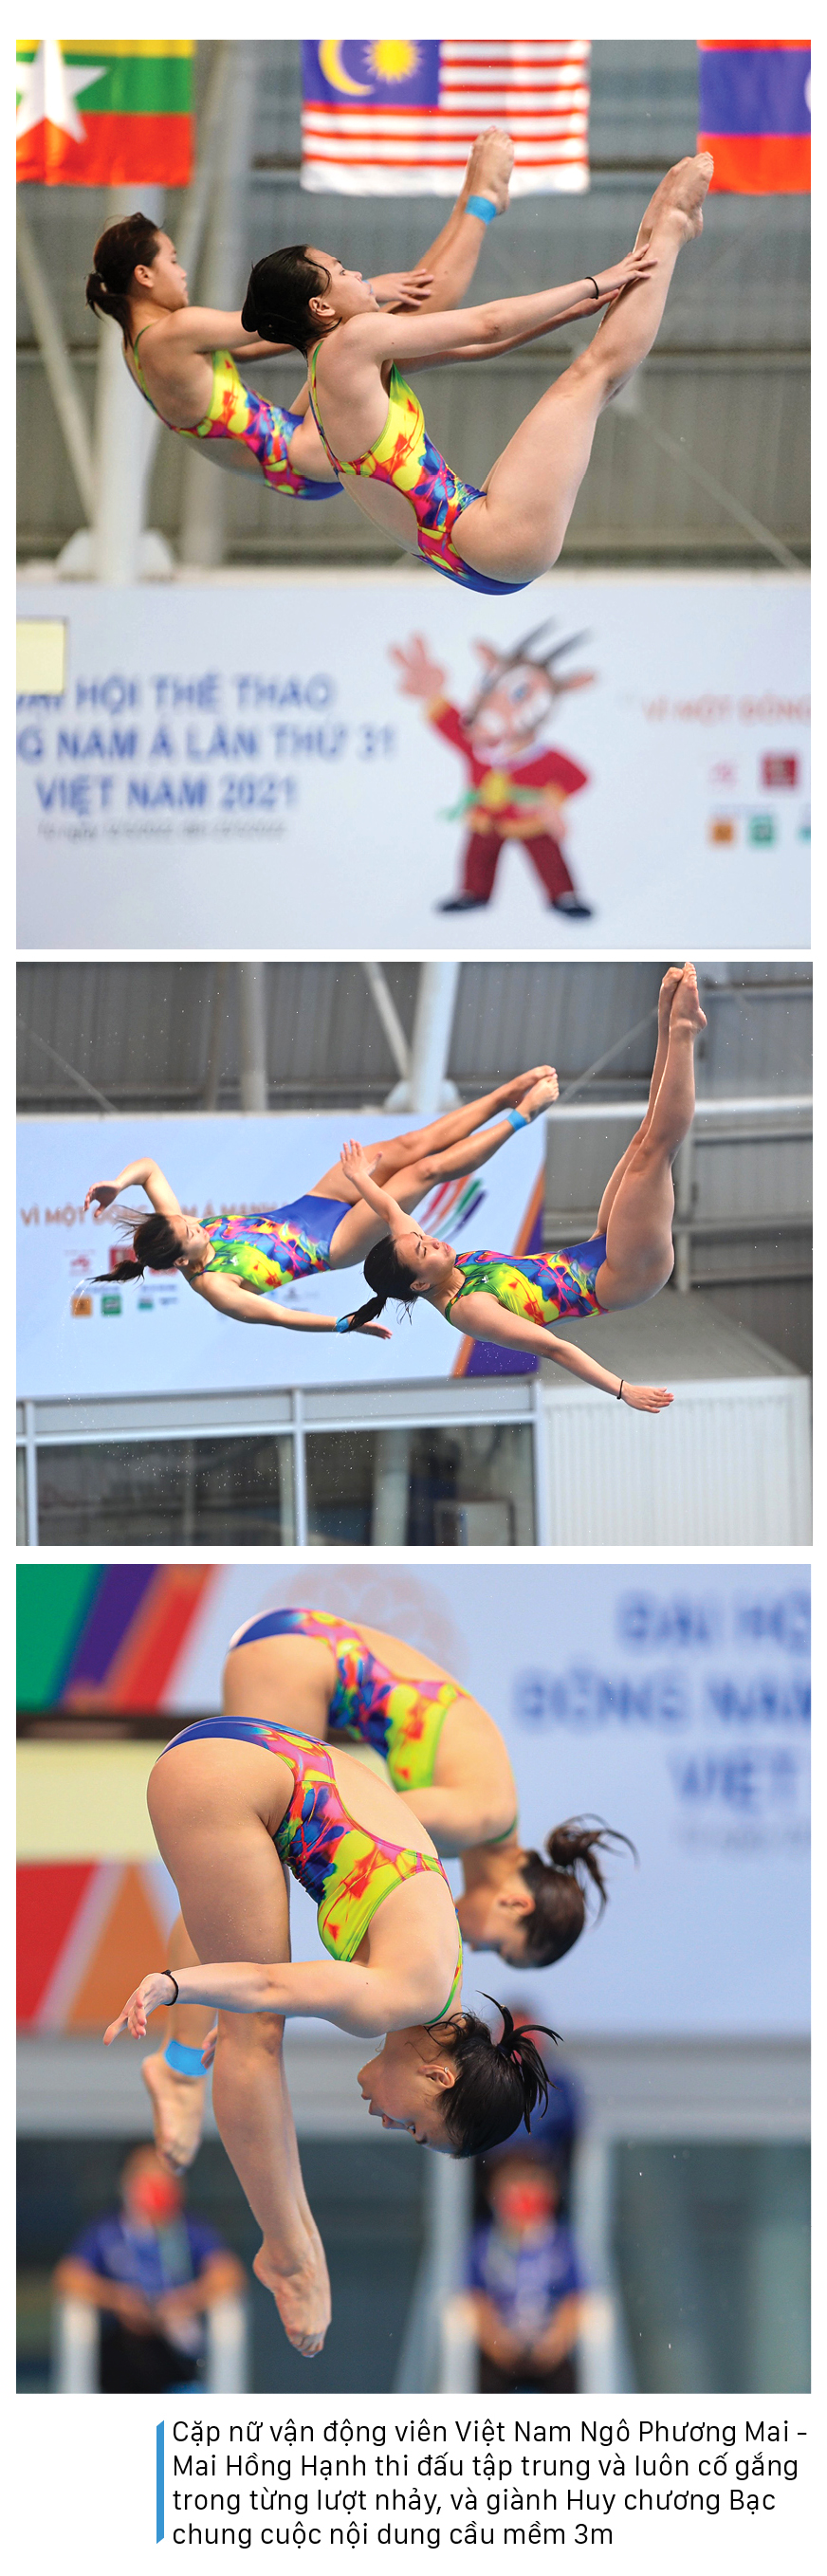 Những khoảnh khắc đẹp của môn nhảy cầu tại SEA Games  31 ảnh 2